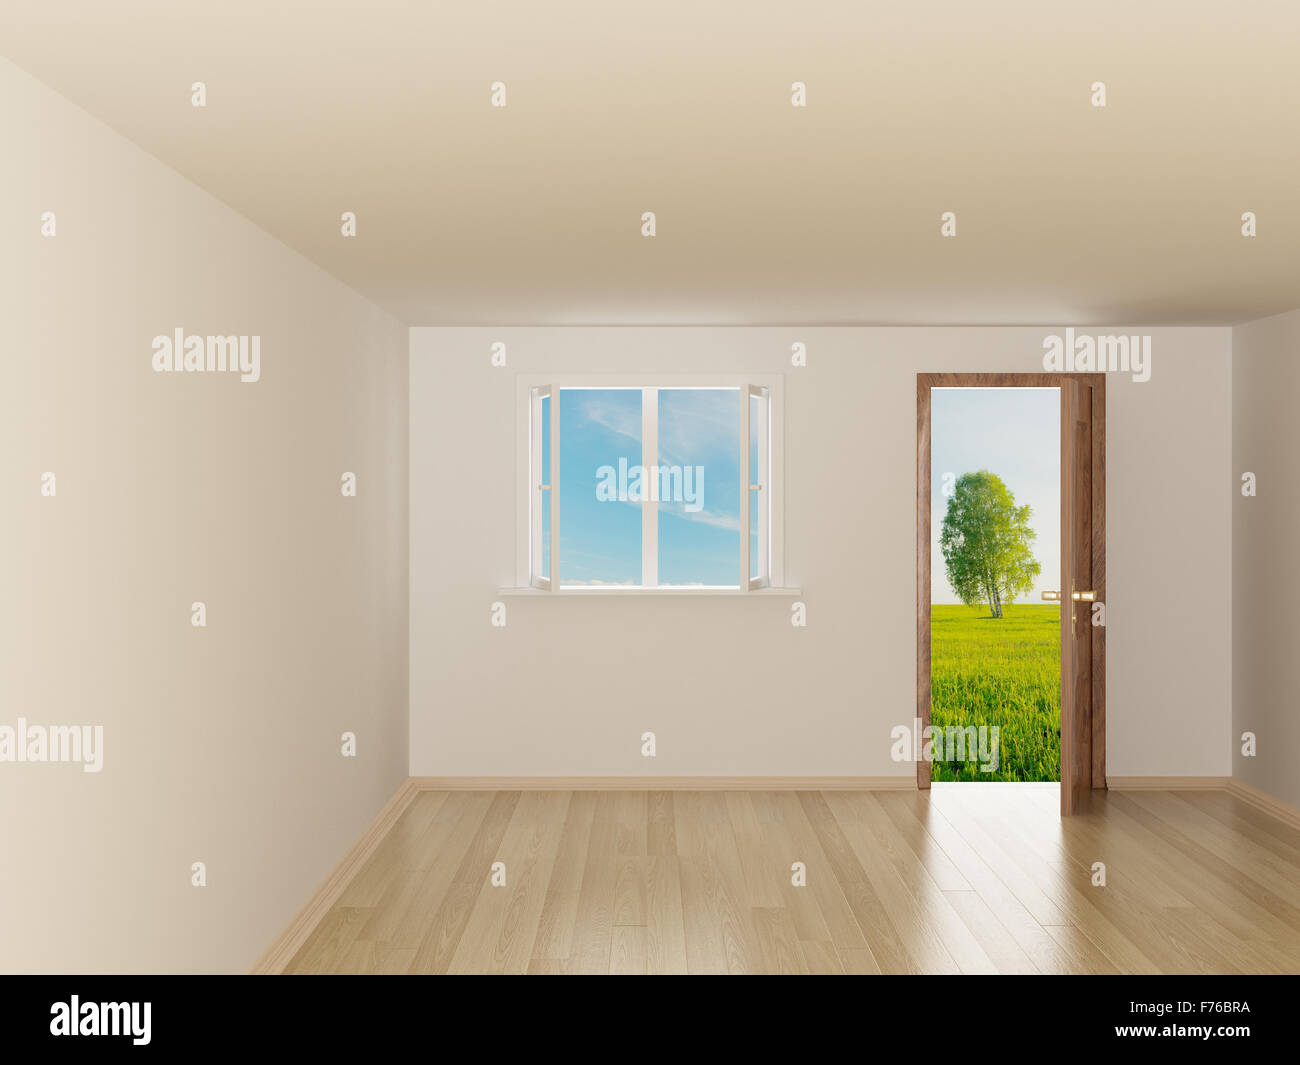 Empty room. Landscape behind the open door. 3D image Stock Photo